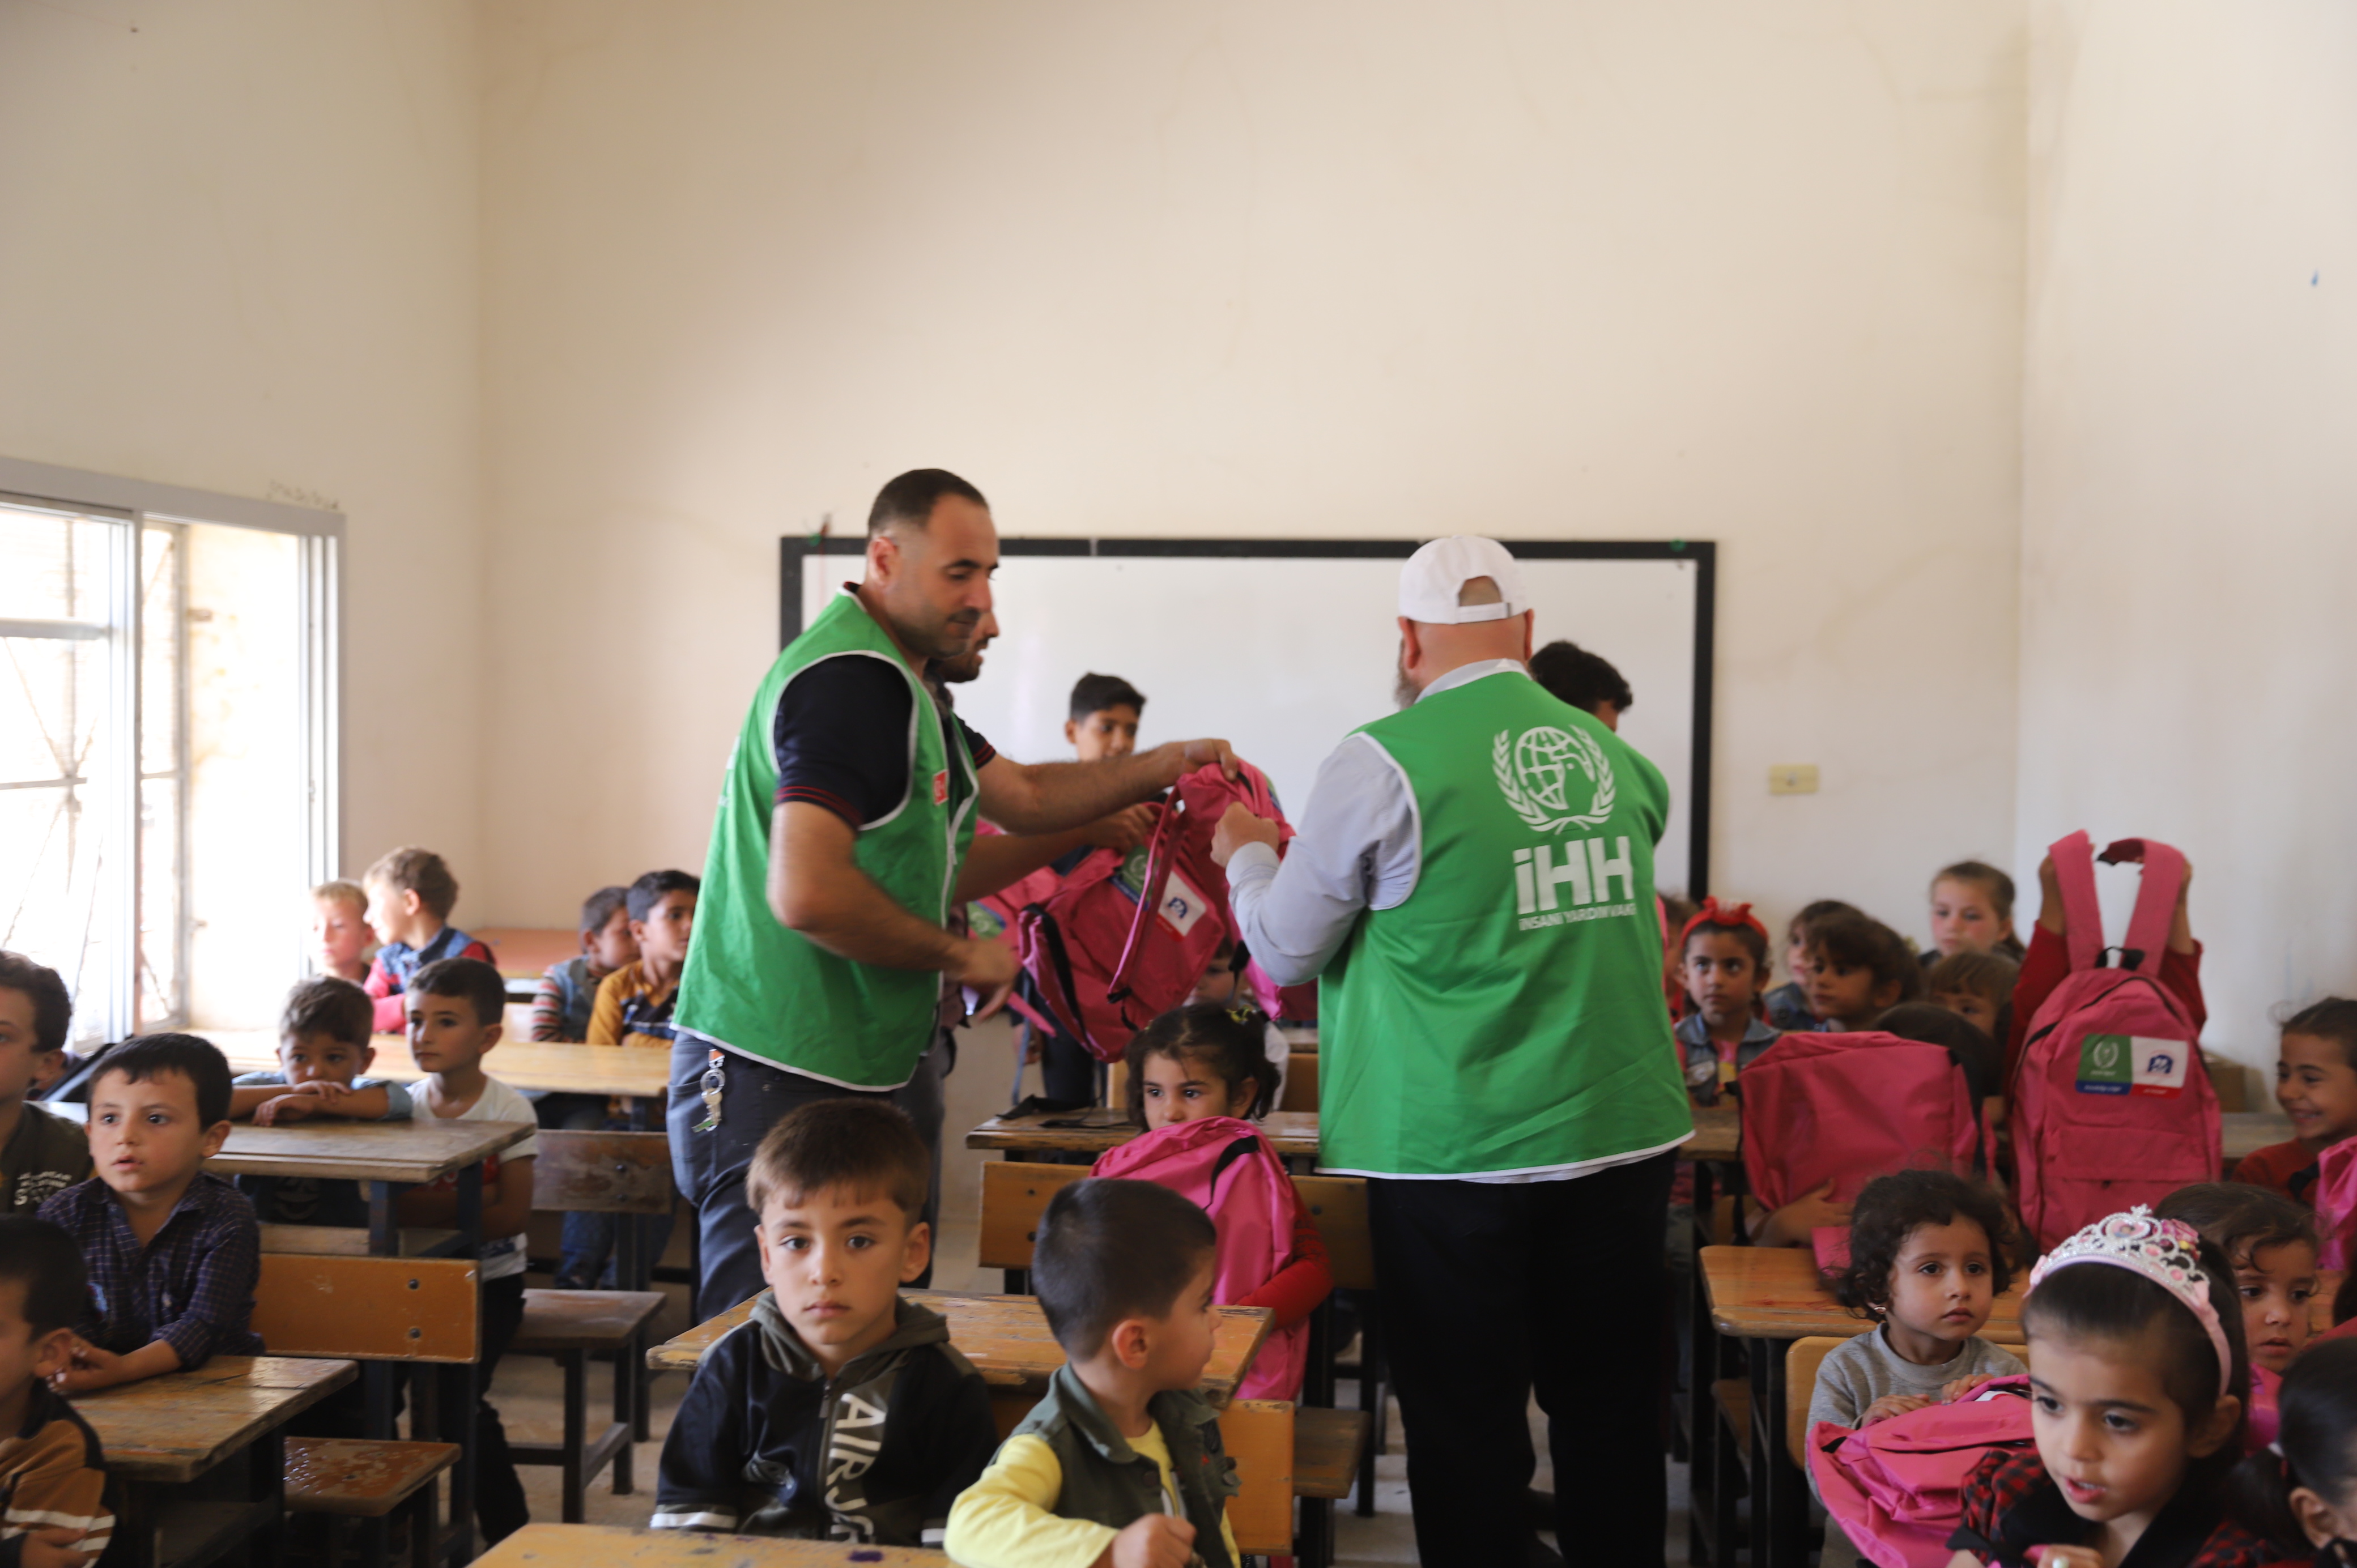 İHH’dan Suriye’de eğitim desteği